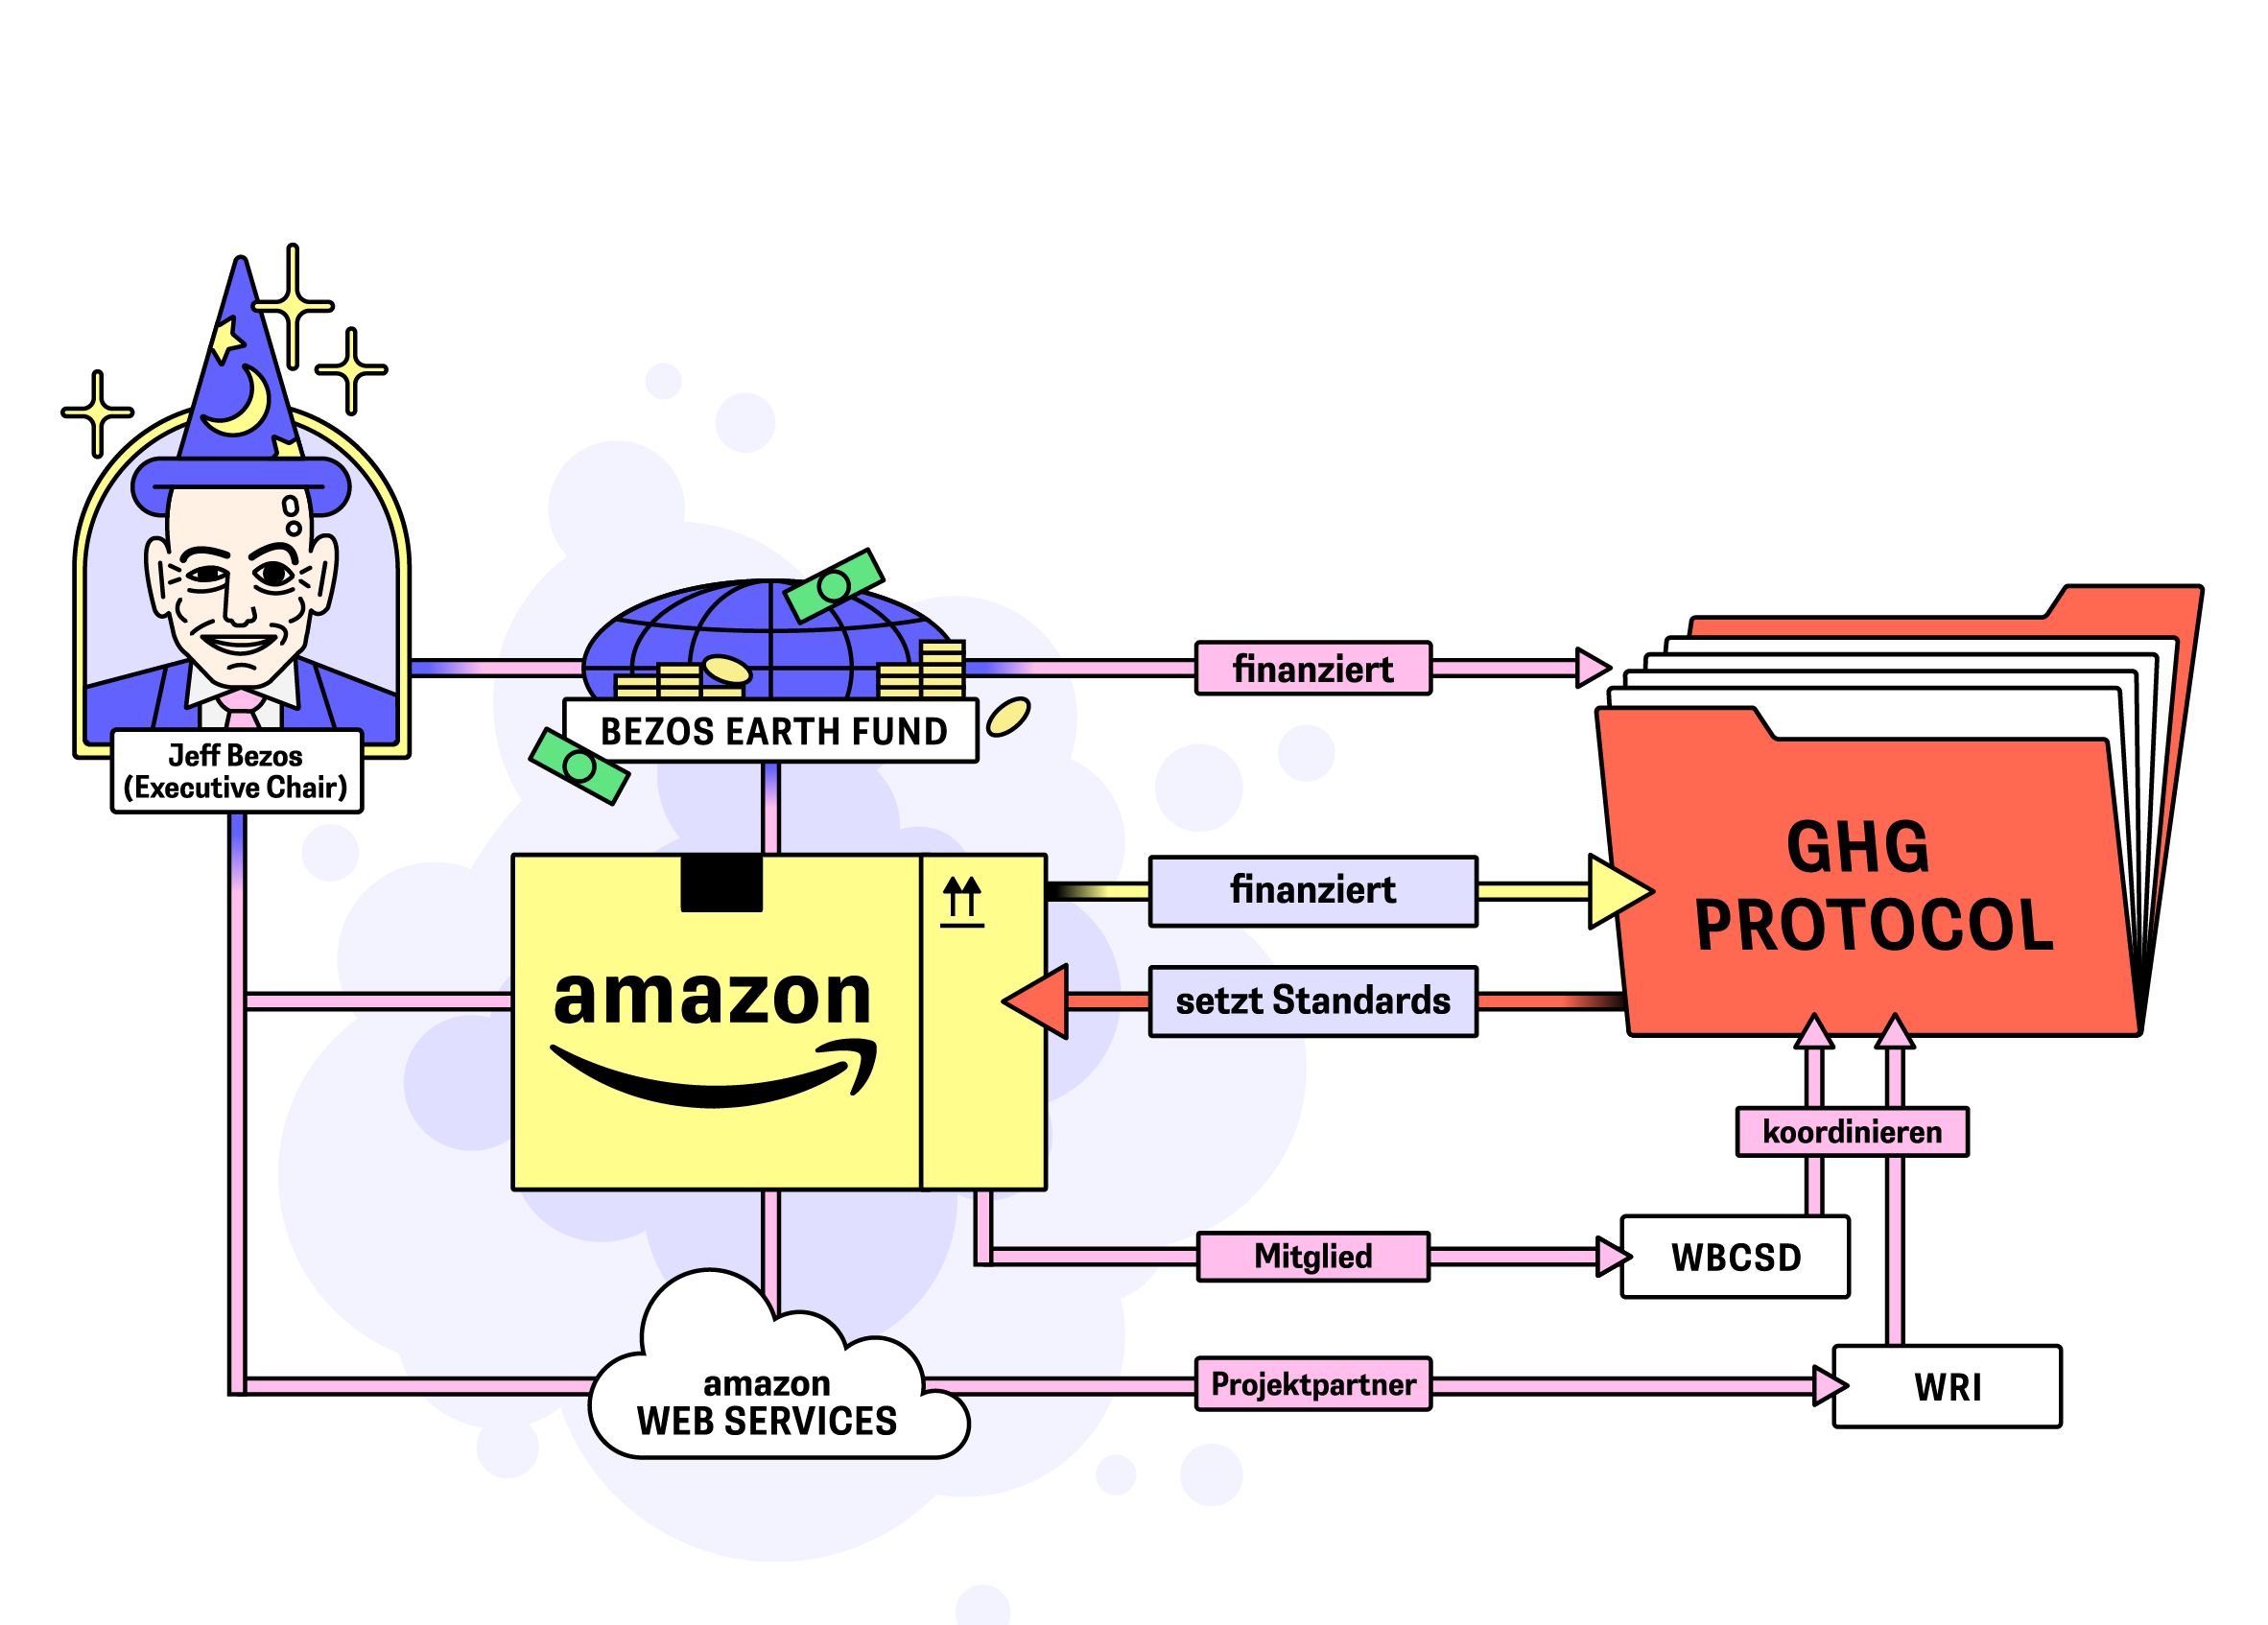 Ein Schema zeigt, das Amazon in vielfacher Weise mit dem GHG Protocol verwoben ist